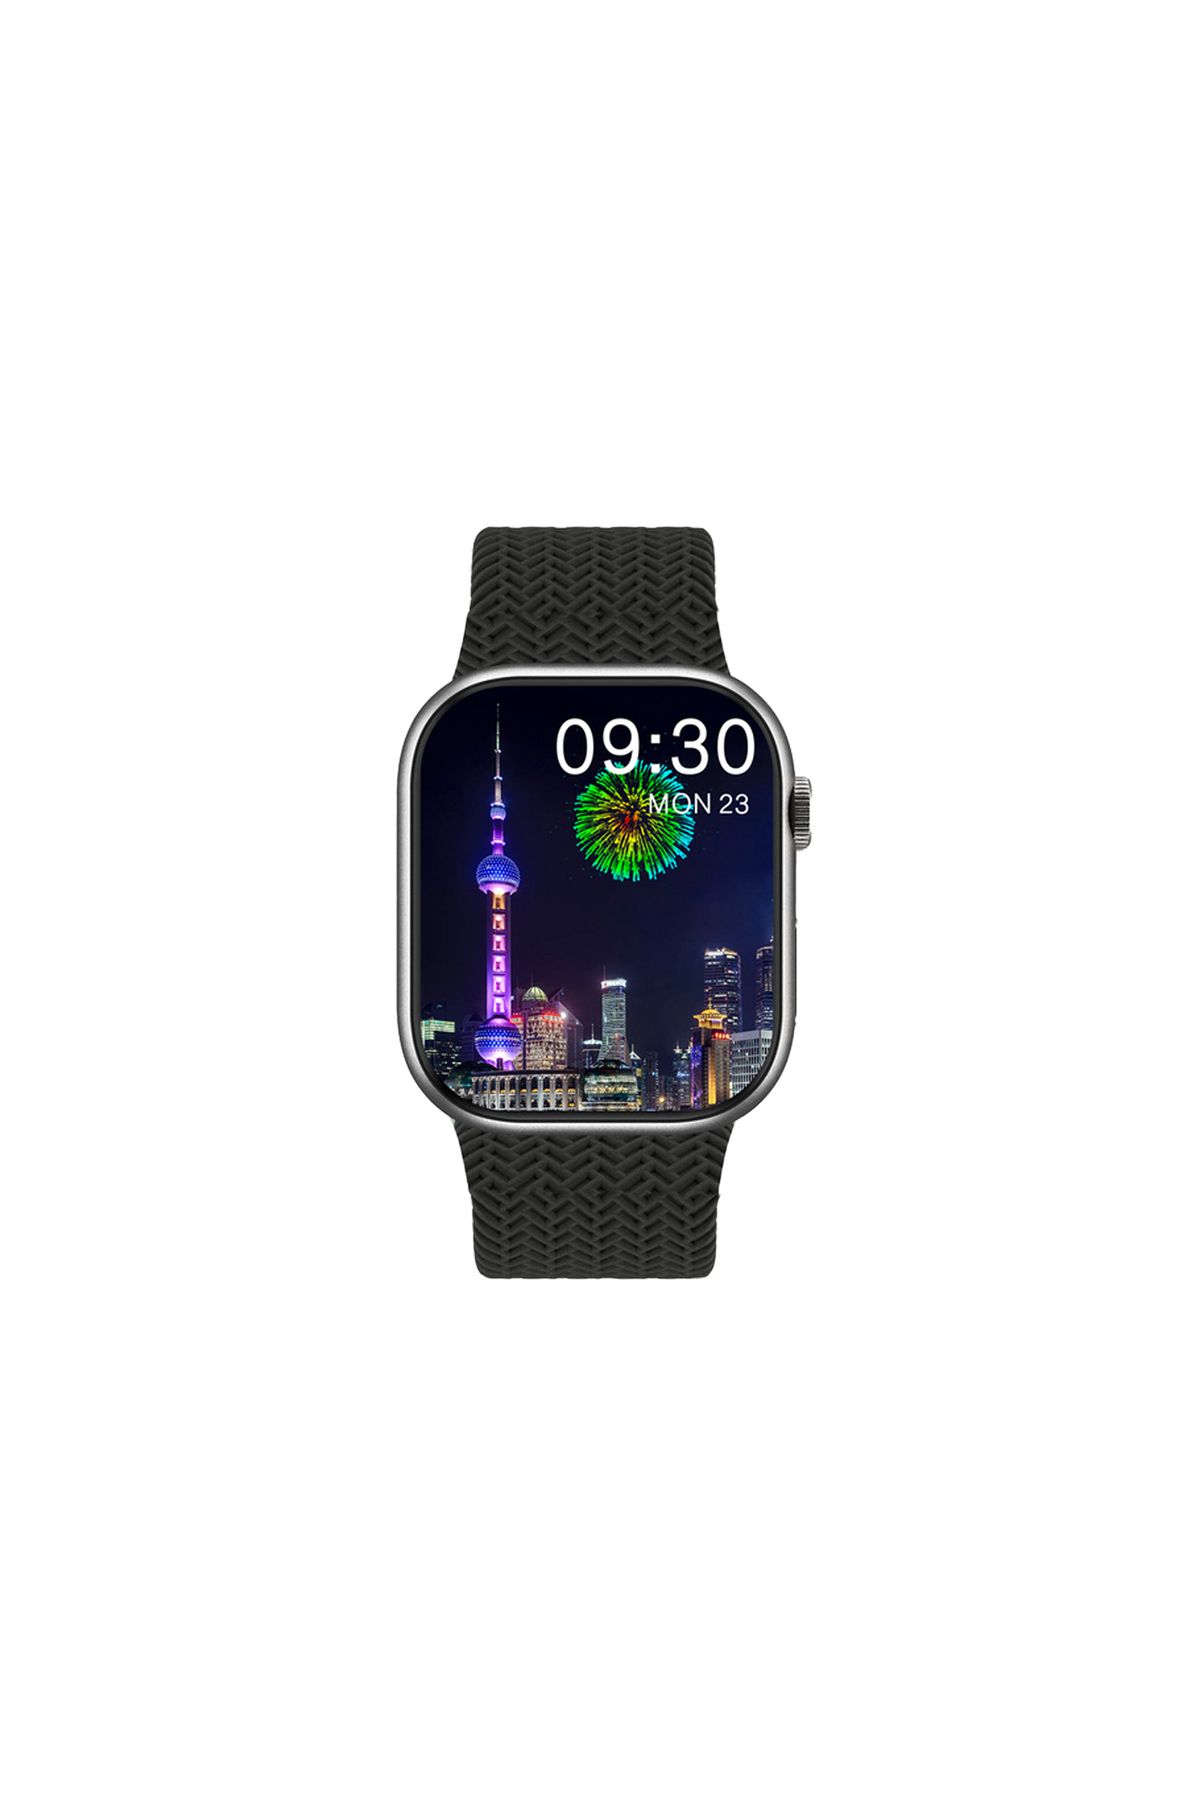 Global Watch HK9 Pro Plus Amoled Ekran Android İos HarmonyOs Uyumlu Akıllı Saat Siyah WNE0916